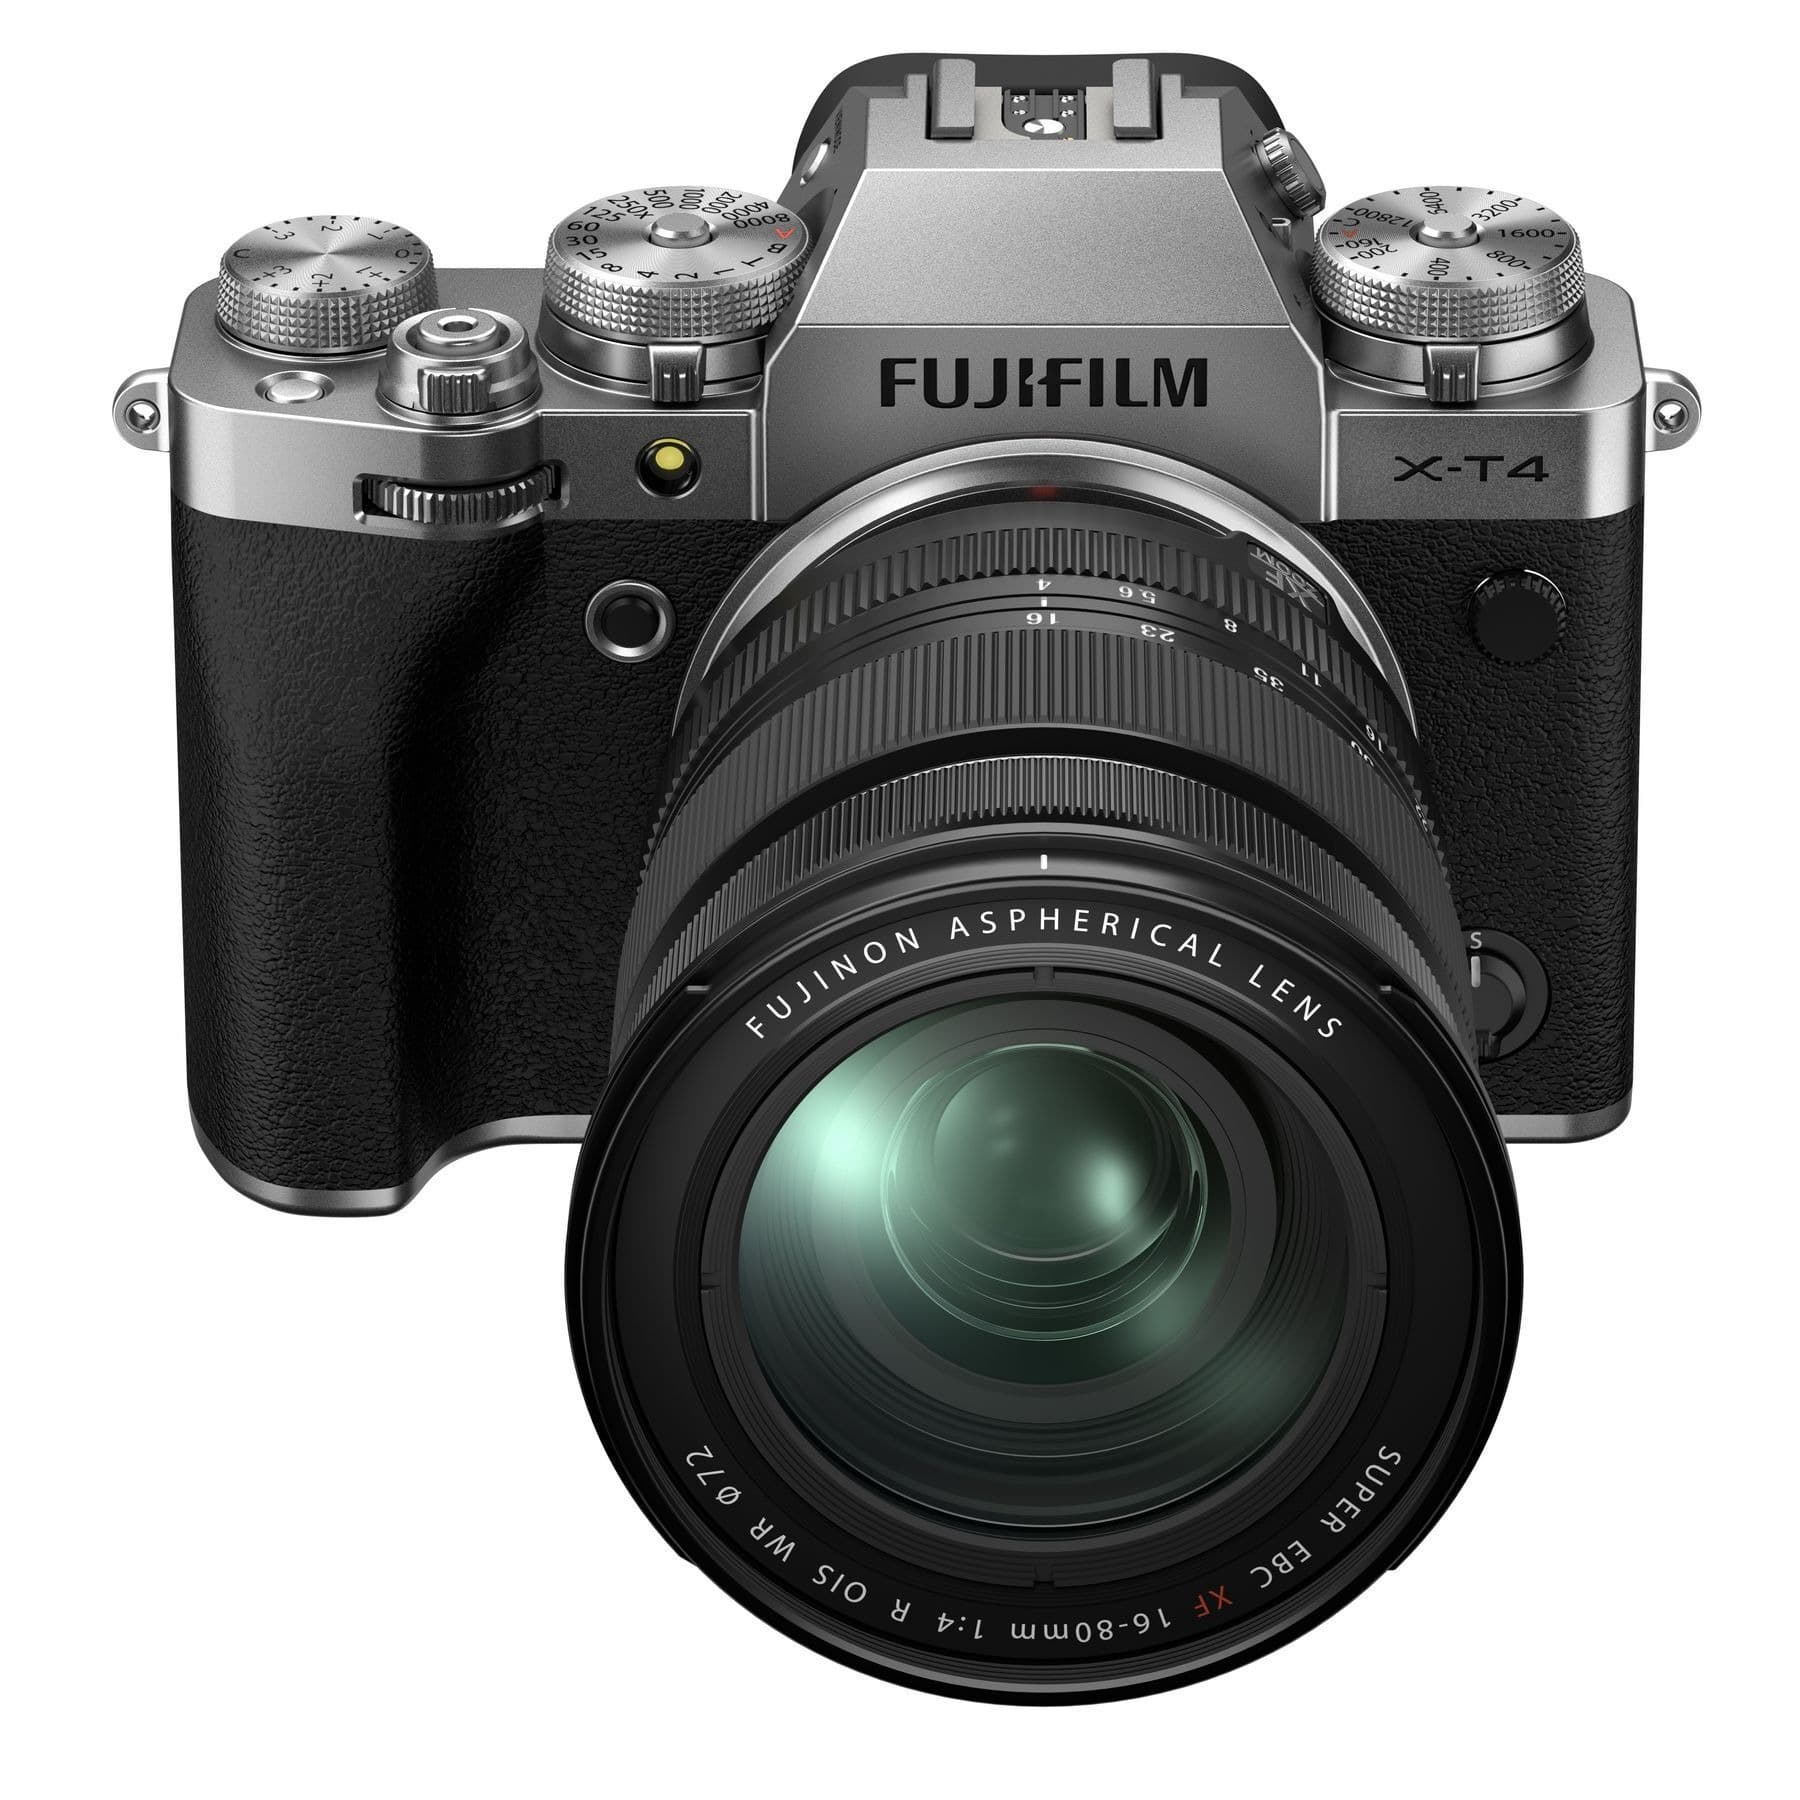 Fujifilm X-T4 aynasız kamera gövde içi sabitleme özelliğiyle geldi